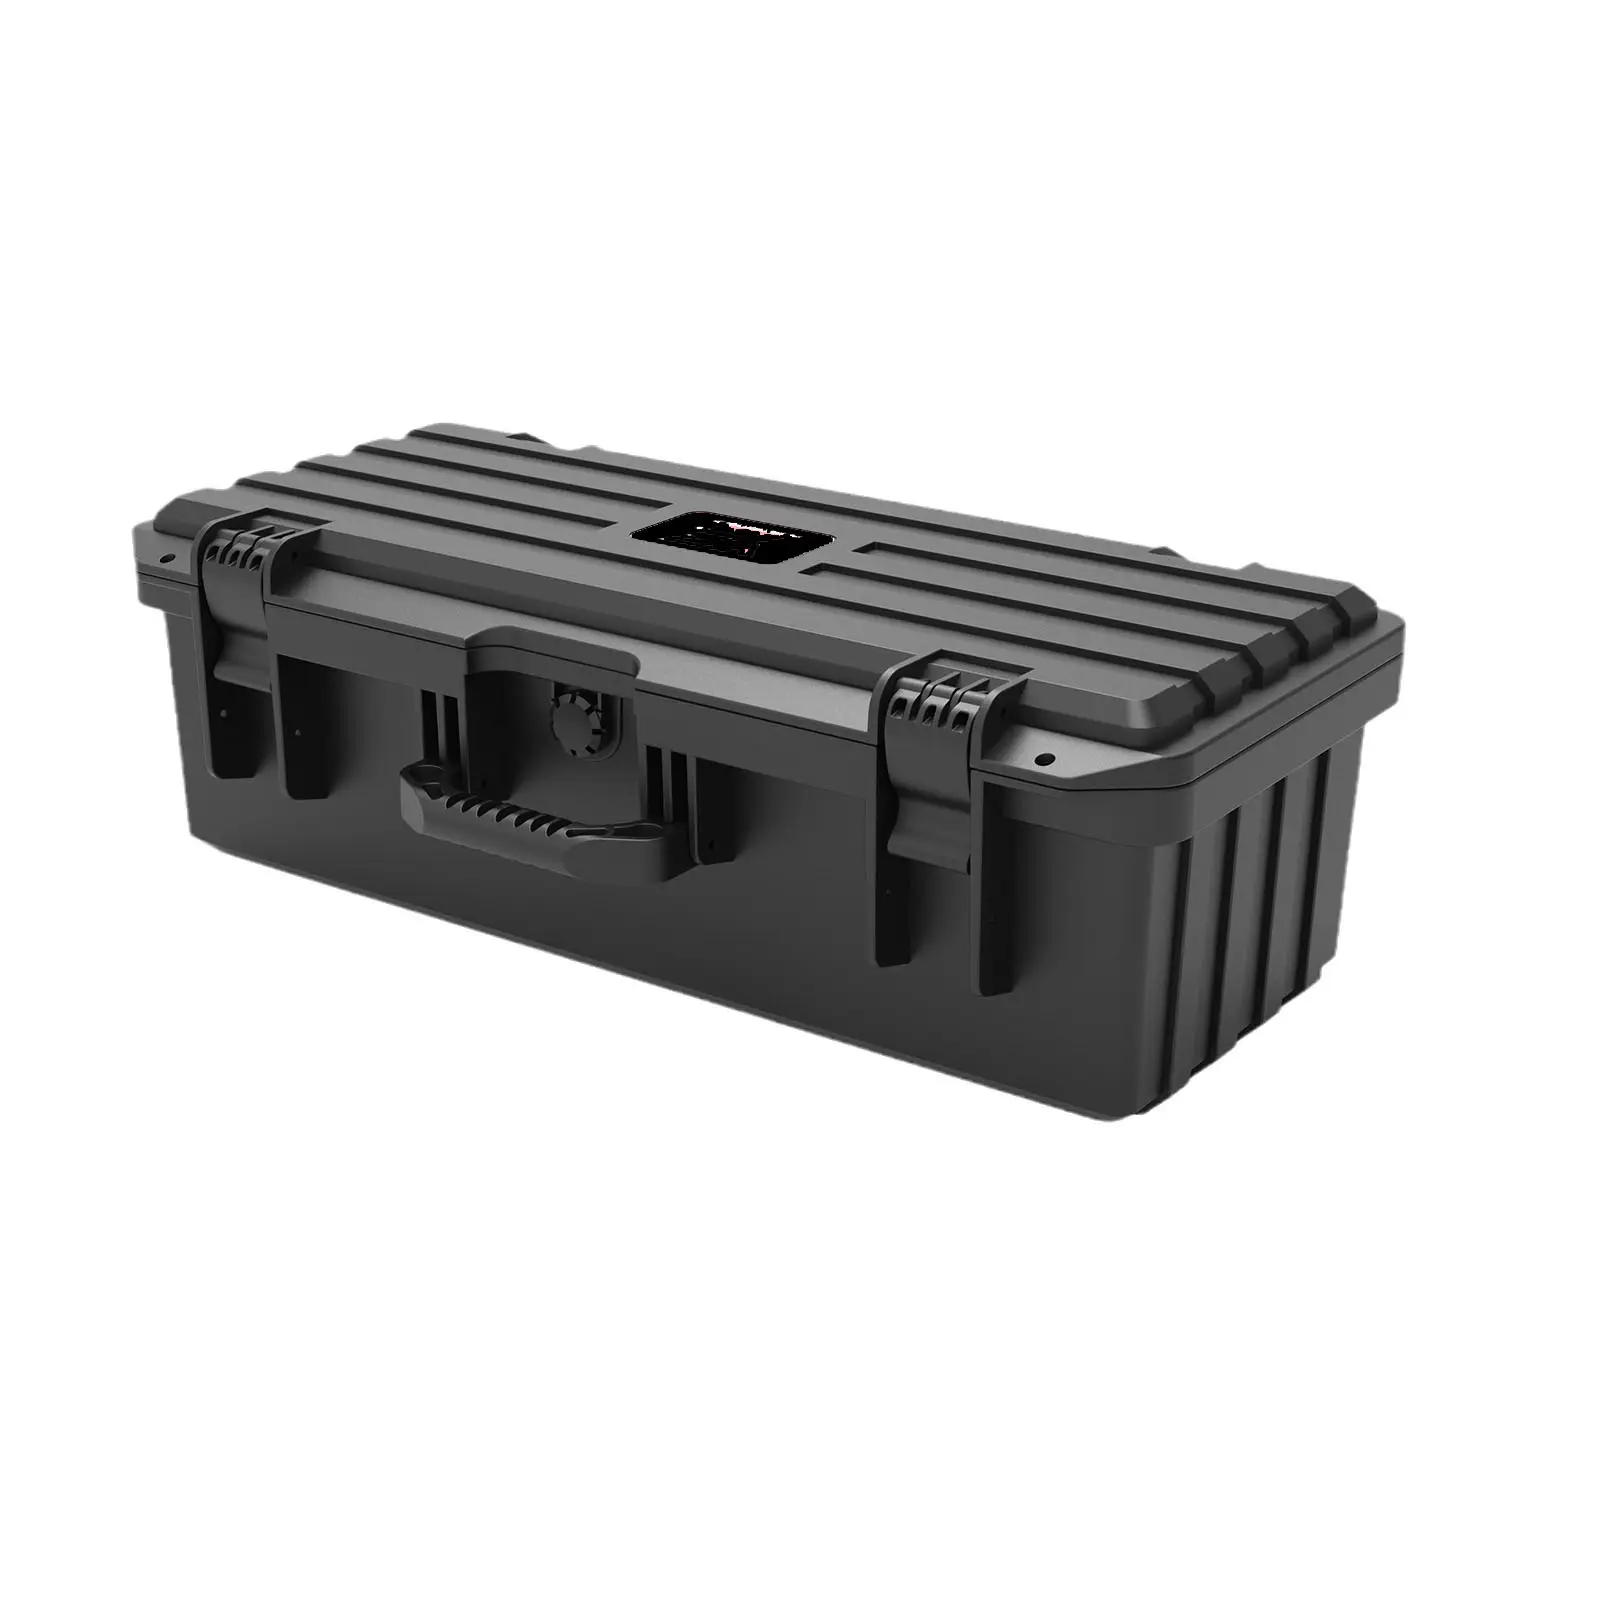 Nuevo estuche de seguridad Caja de herramientas portátil Caja de equipo de fotografía de plástico Caja de seguridad digital impermeable